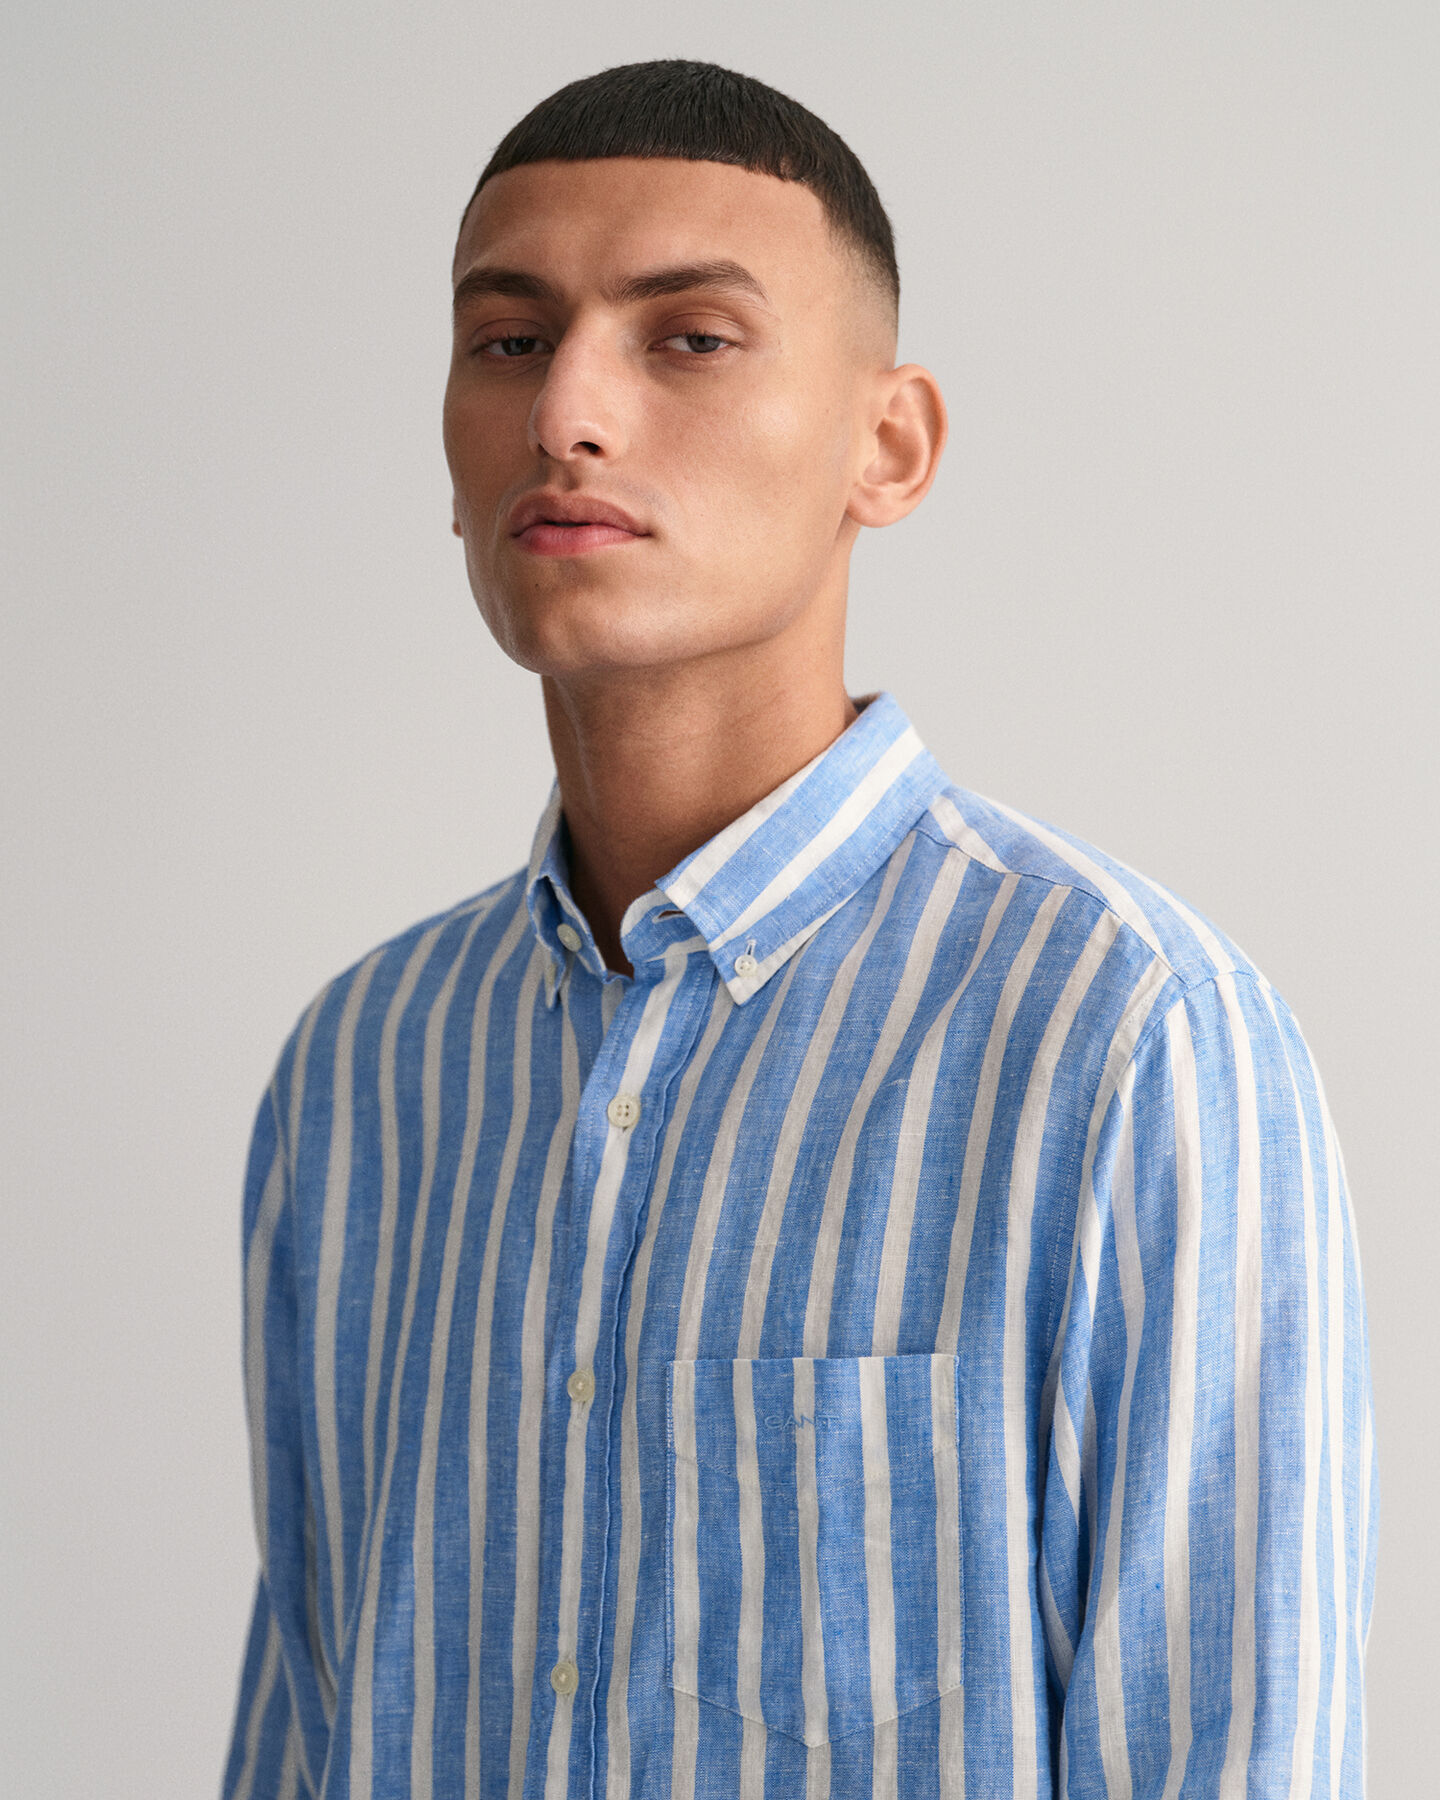 Regular Fit Wide Striped Linen Shirt - GANT